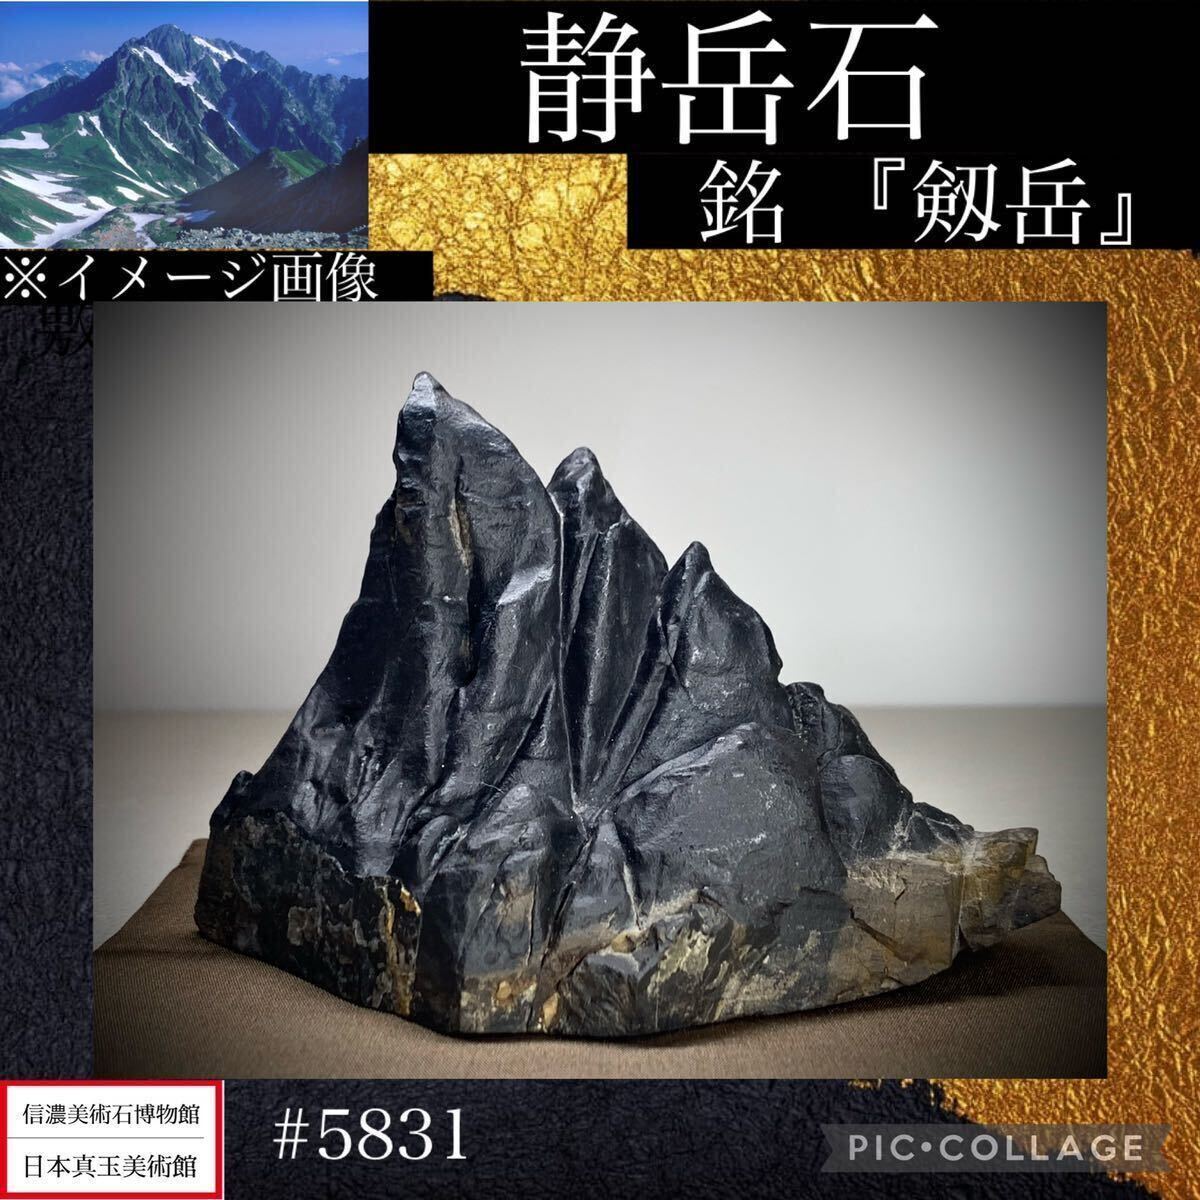 {GW Thanksgiving } камень суйсеки бонсай тихий пик камень . ткань есть .[. пик ] ширина 13× высота 9.5(cm) 560g антиквариат поддон камень старый изобразительное искусство оценка камень .. камень futoshi озеро камень China старый .5831